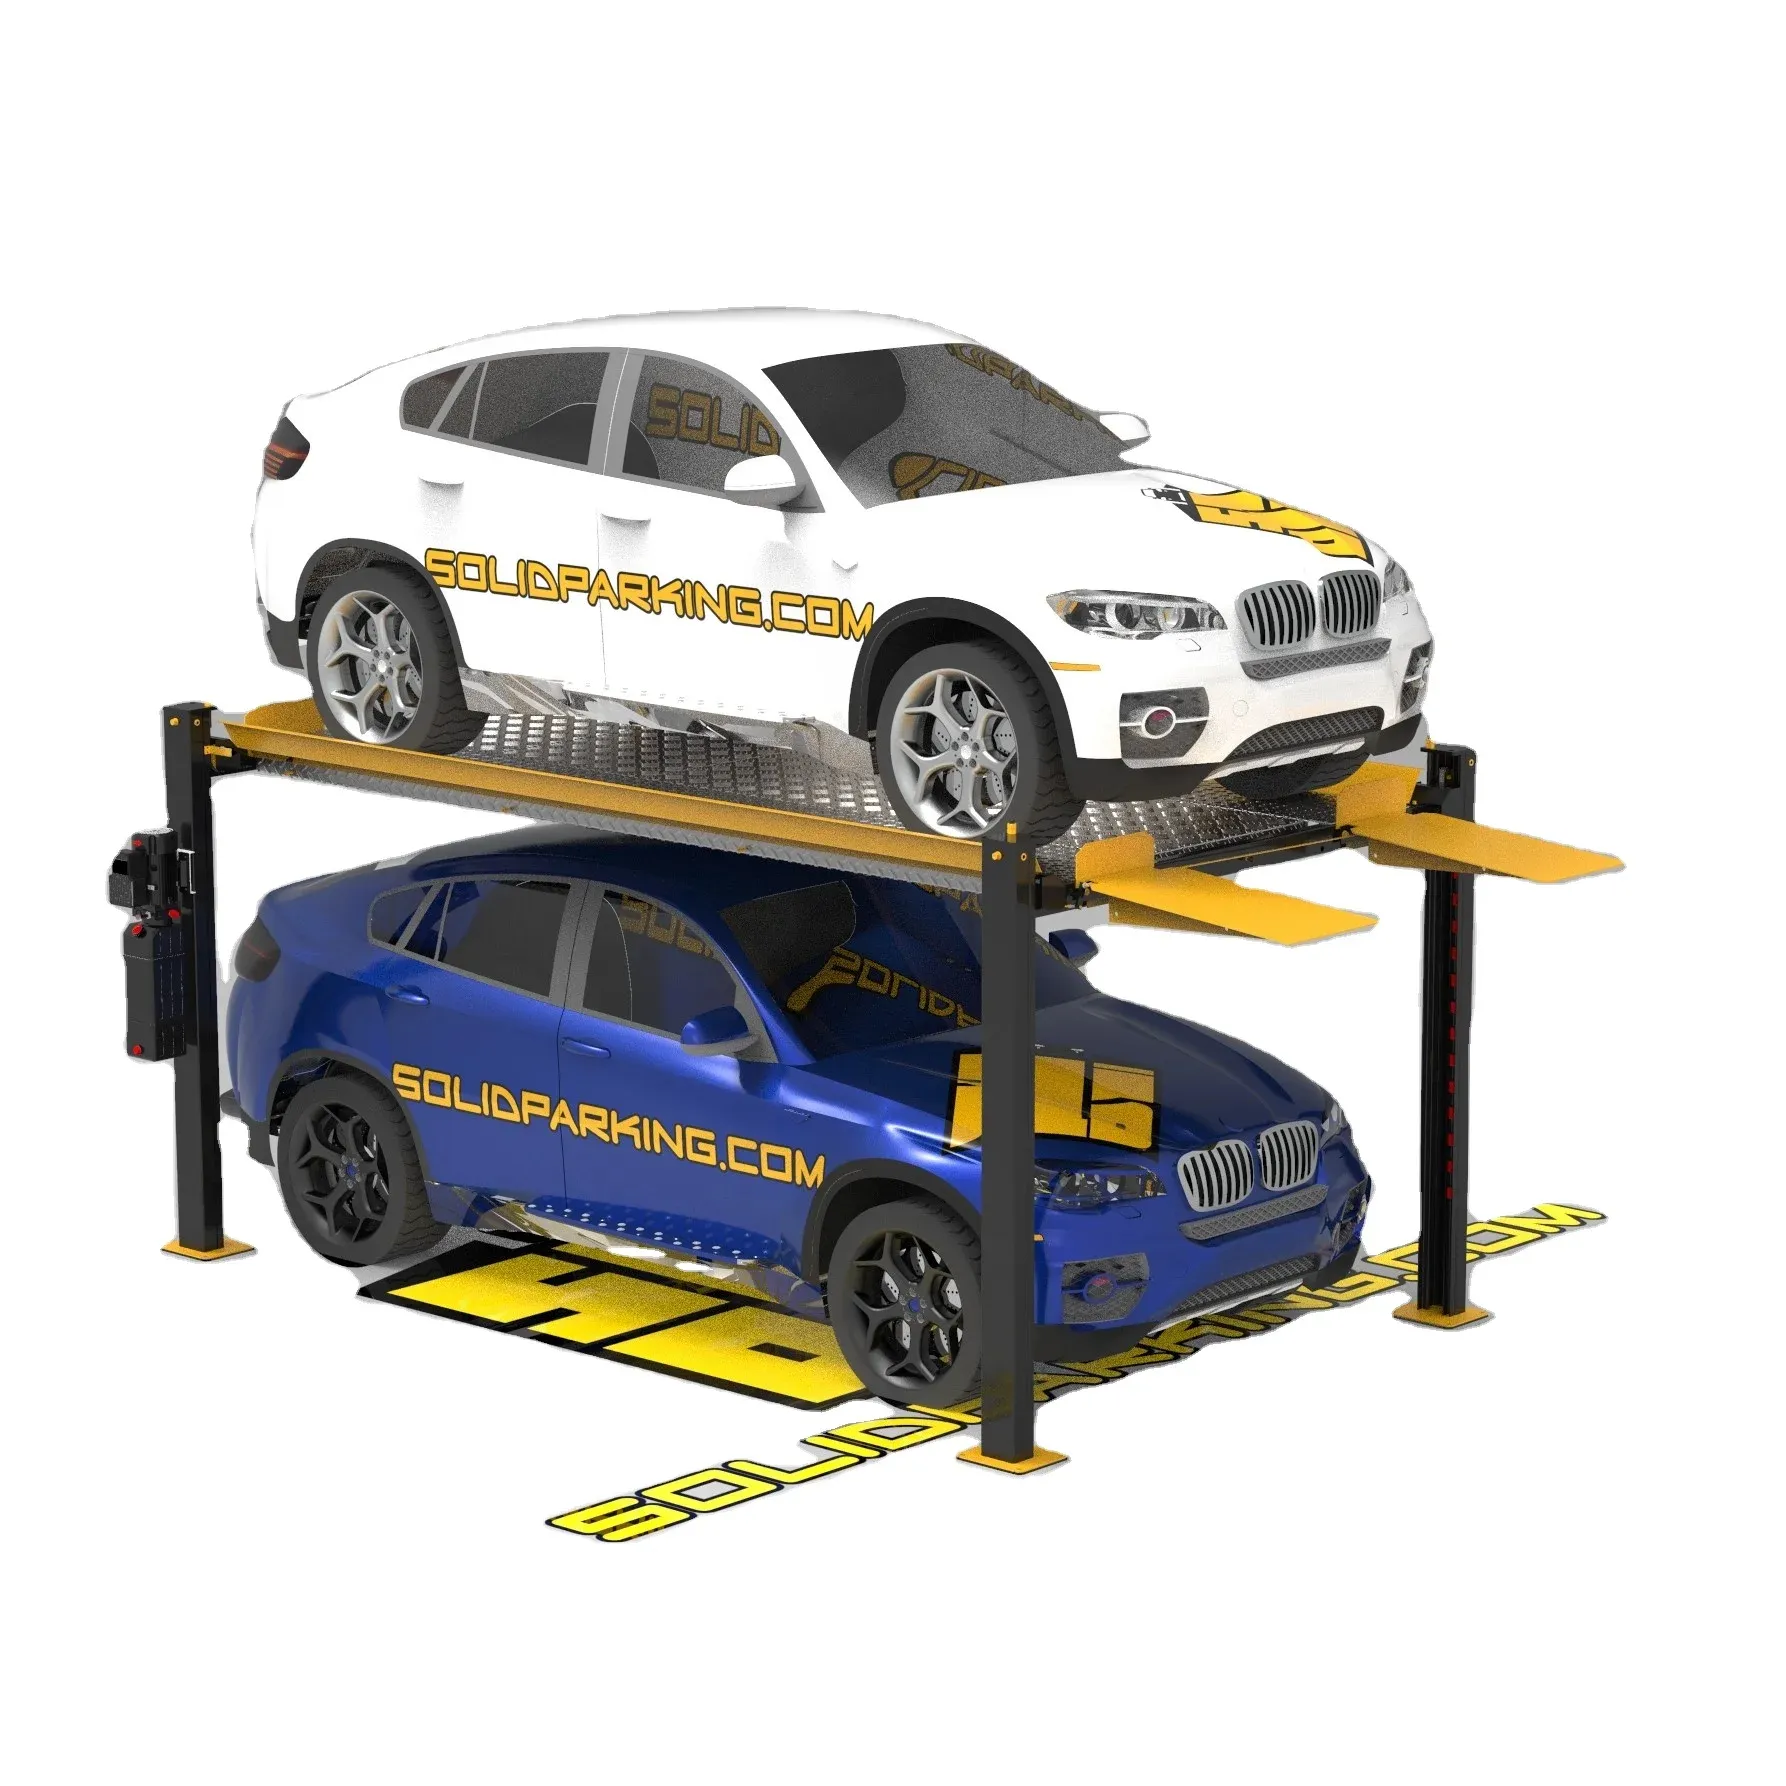 फैक्ट्री डायरेक्ट सेल 4-पोस्ट कार लिफ्ट लोड 3.6 टन वाहन होइस्ट हाइड्रोलिक पार्किंग के लिए जैक के साथ